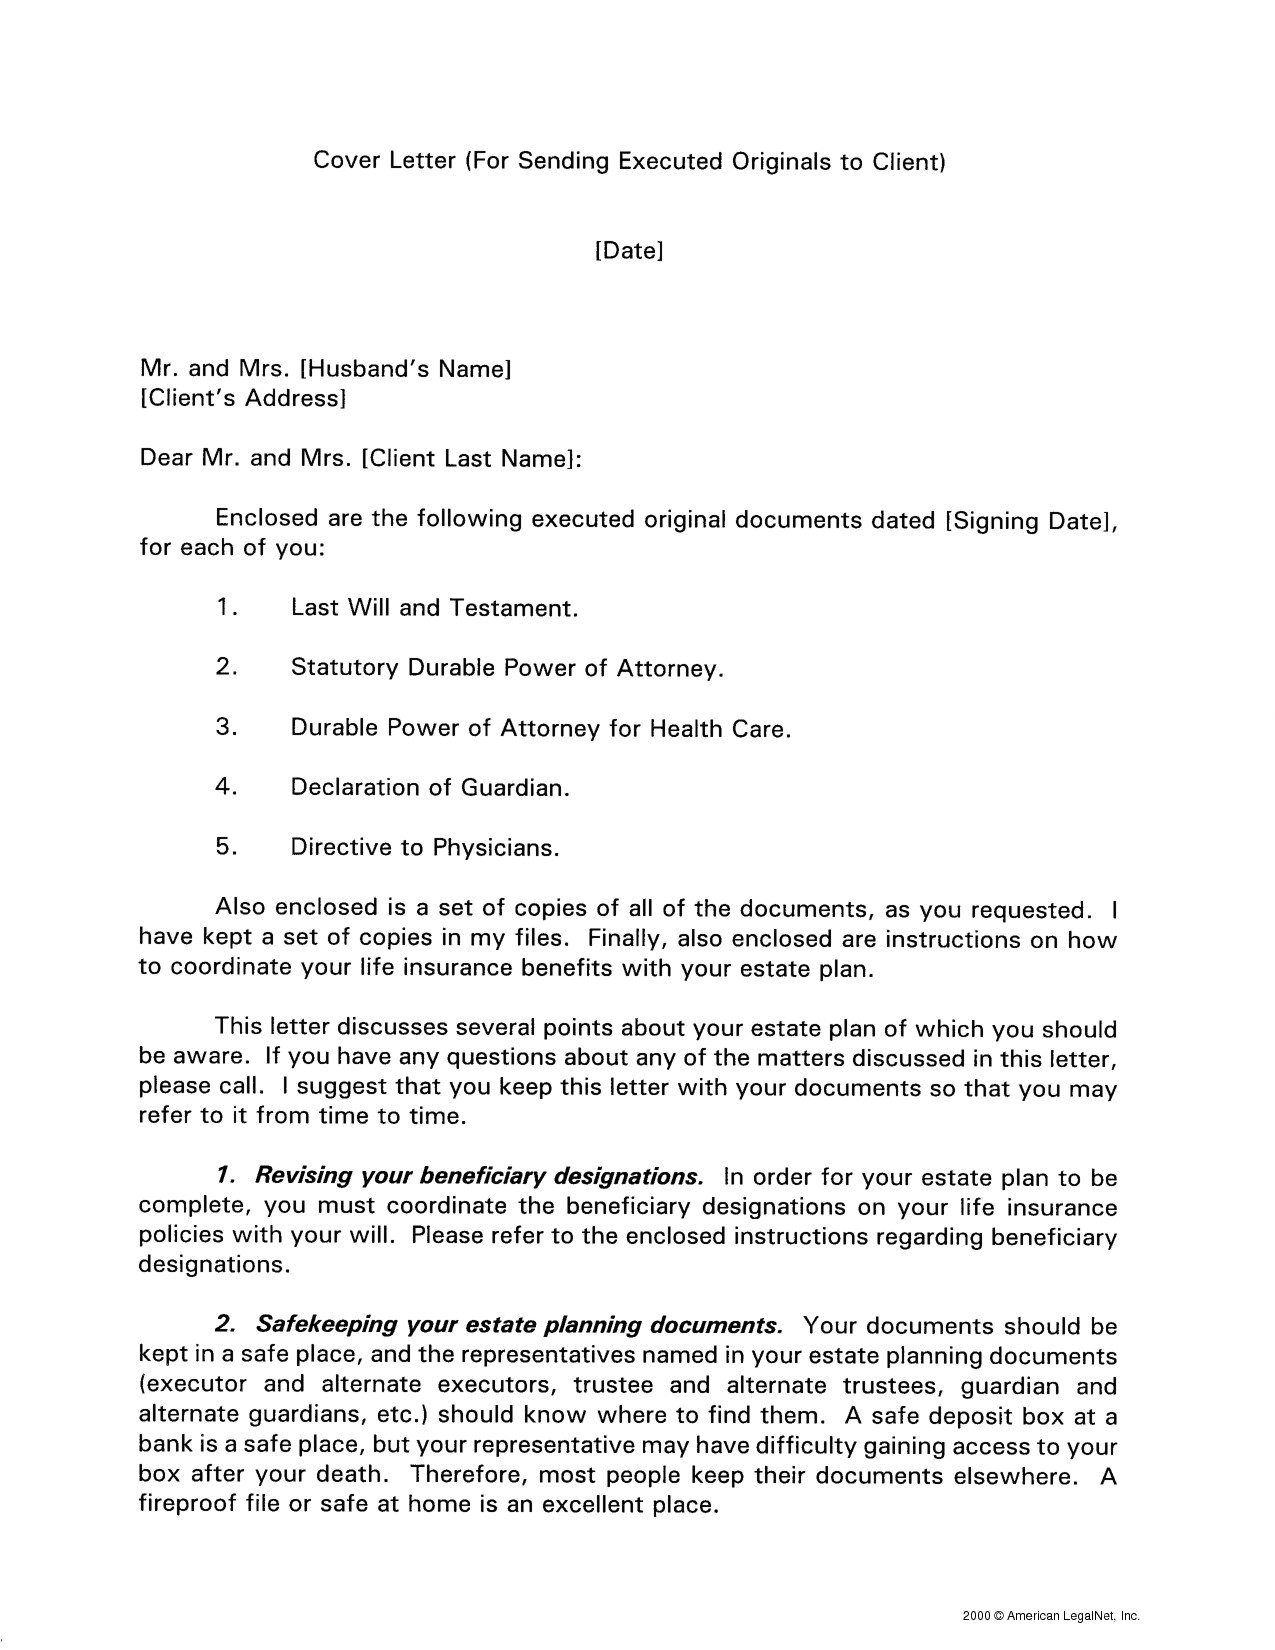 cover letter for sending documents